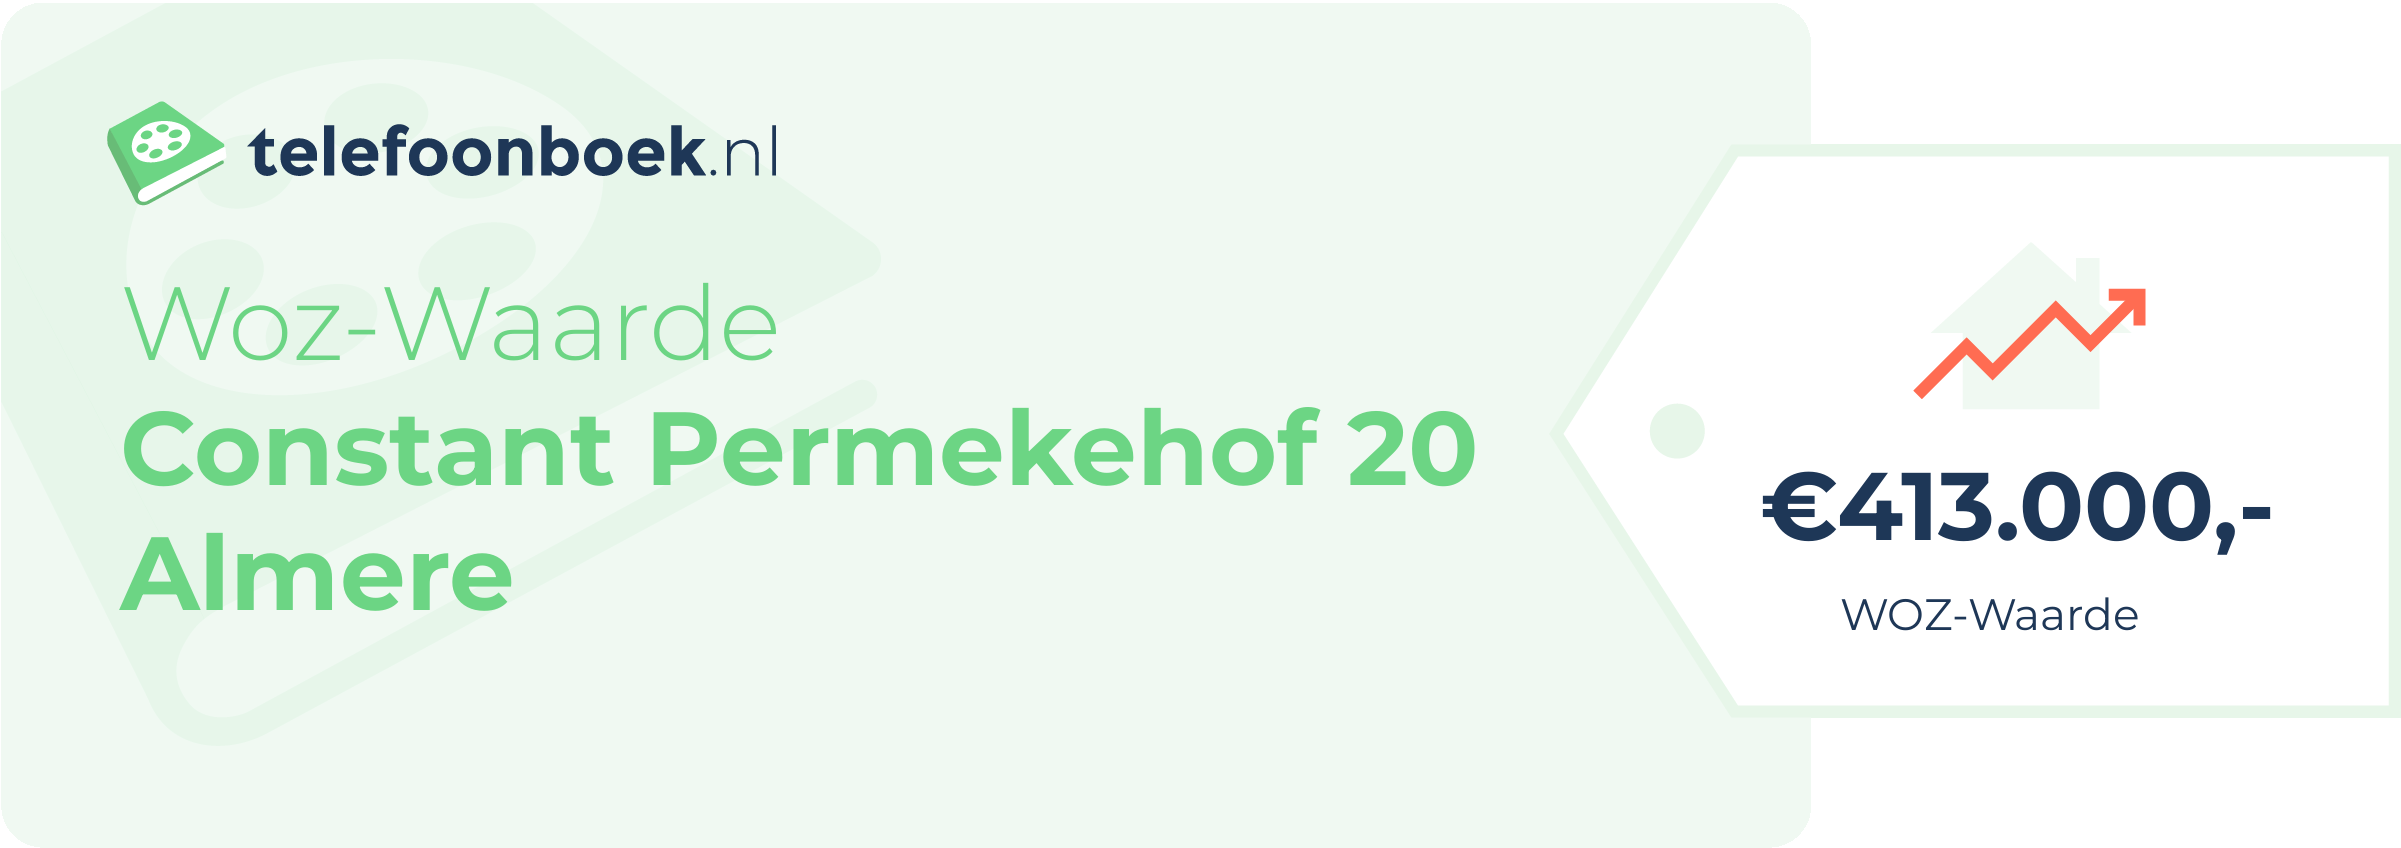 WOZ-waarde Constant Permekehof 20 Almere